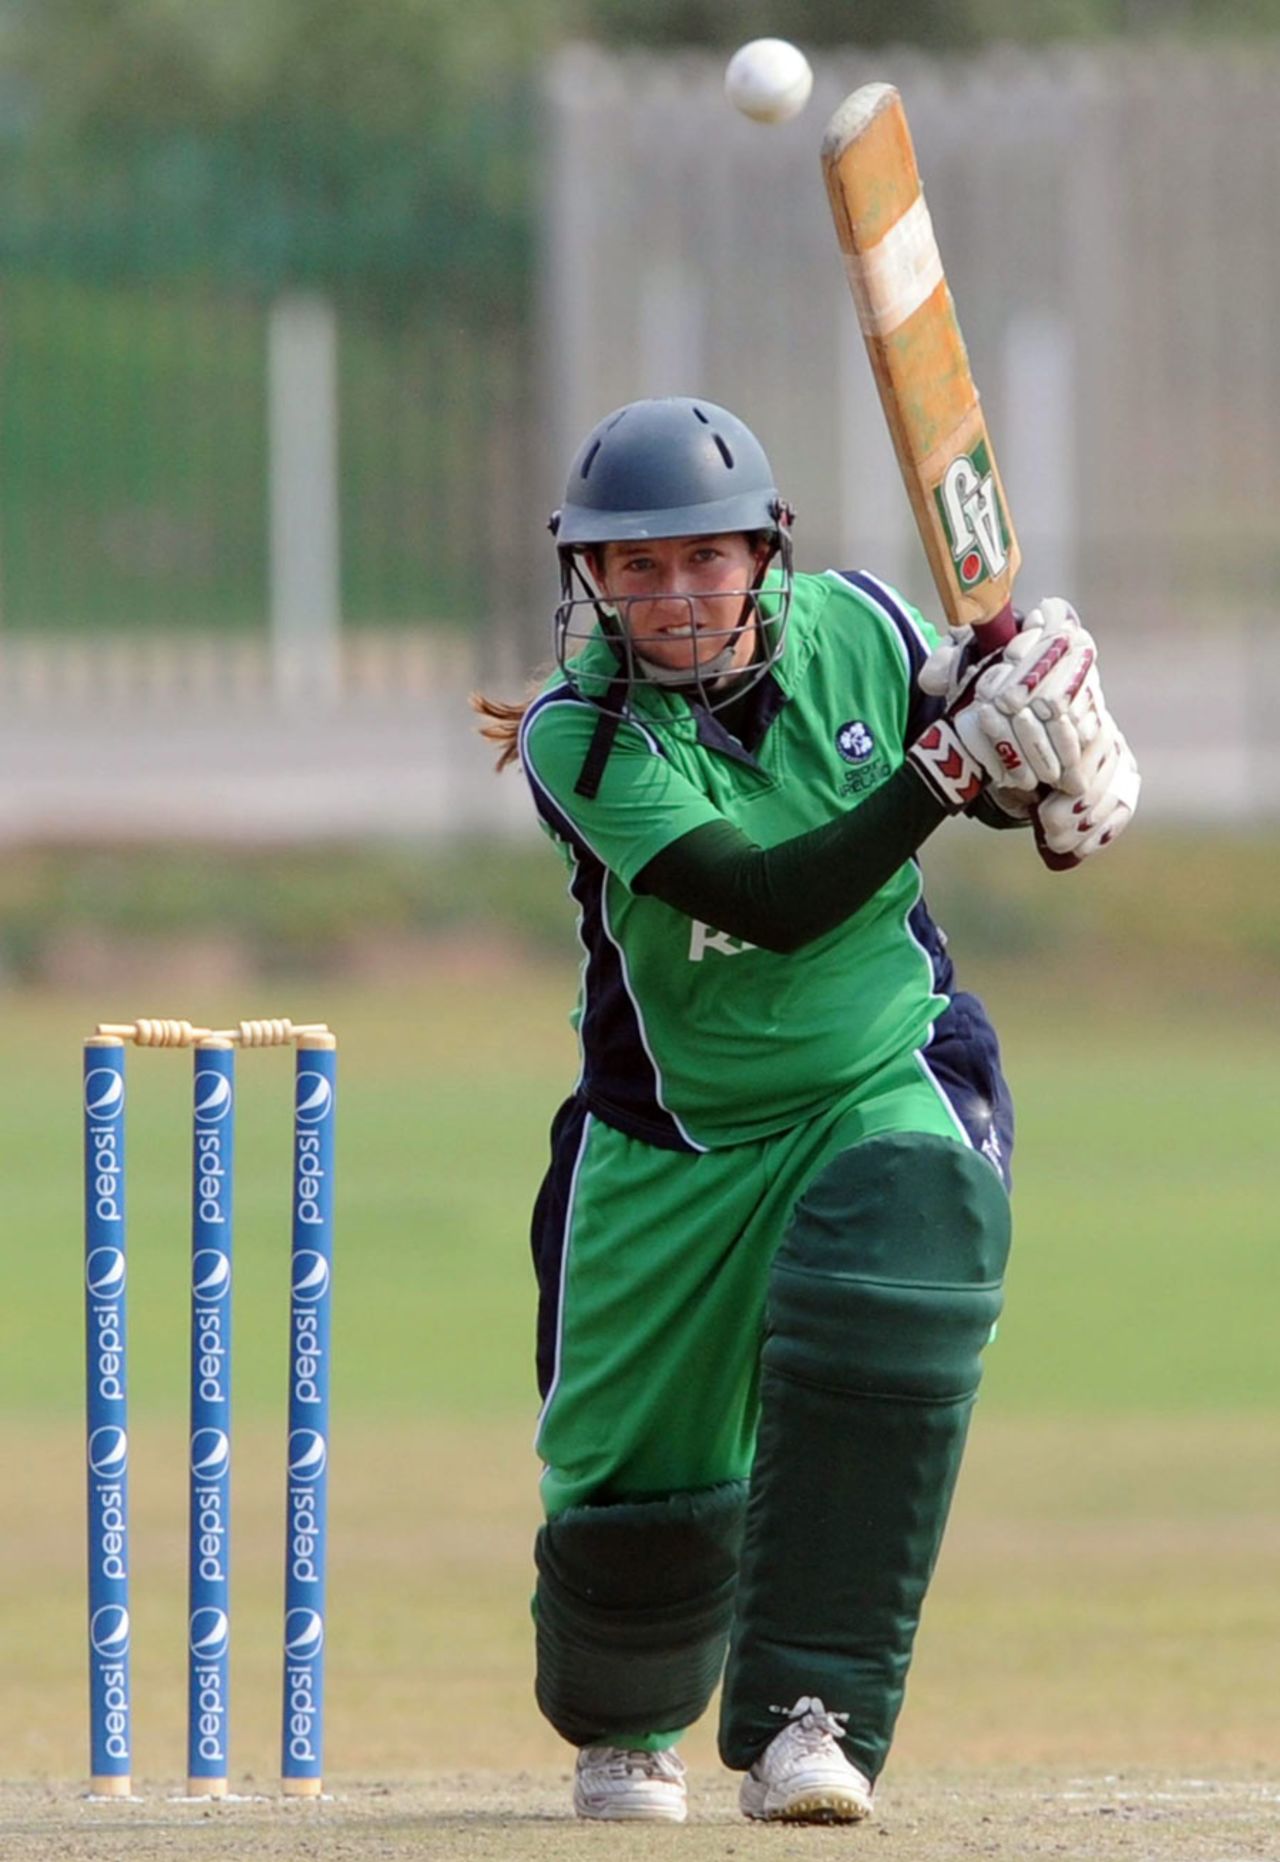 Ireland batsman Isobel Joyce drives through the off side during her innings of 63, ICC Women's Cricket Challenge, Potchefstroom, October 10, 2010